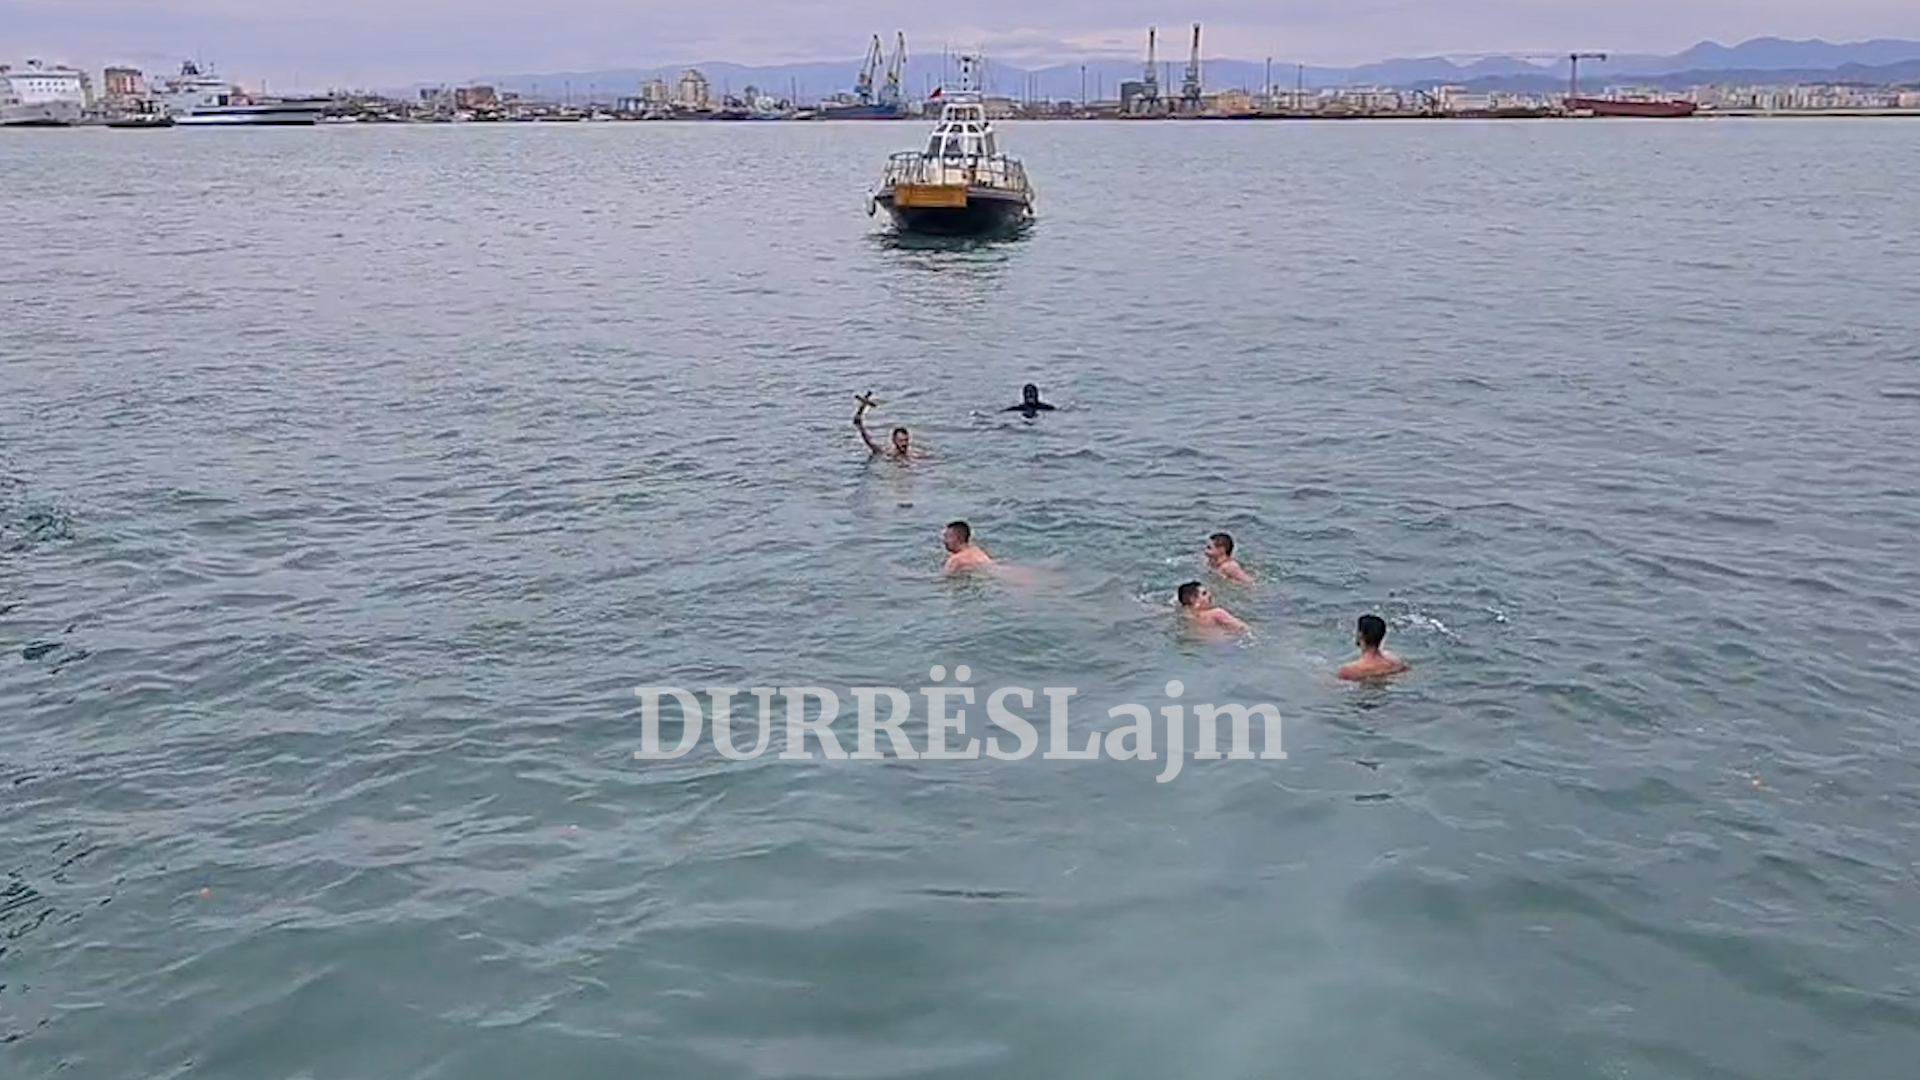 Durrës, kremtohet dita e Ujit të Bekuar. Ky është i riu që kapi për të tretën herën kryqin në det (VIDEO)